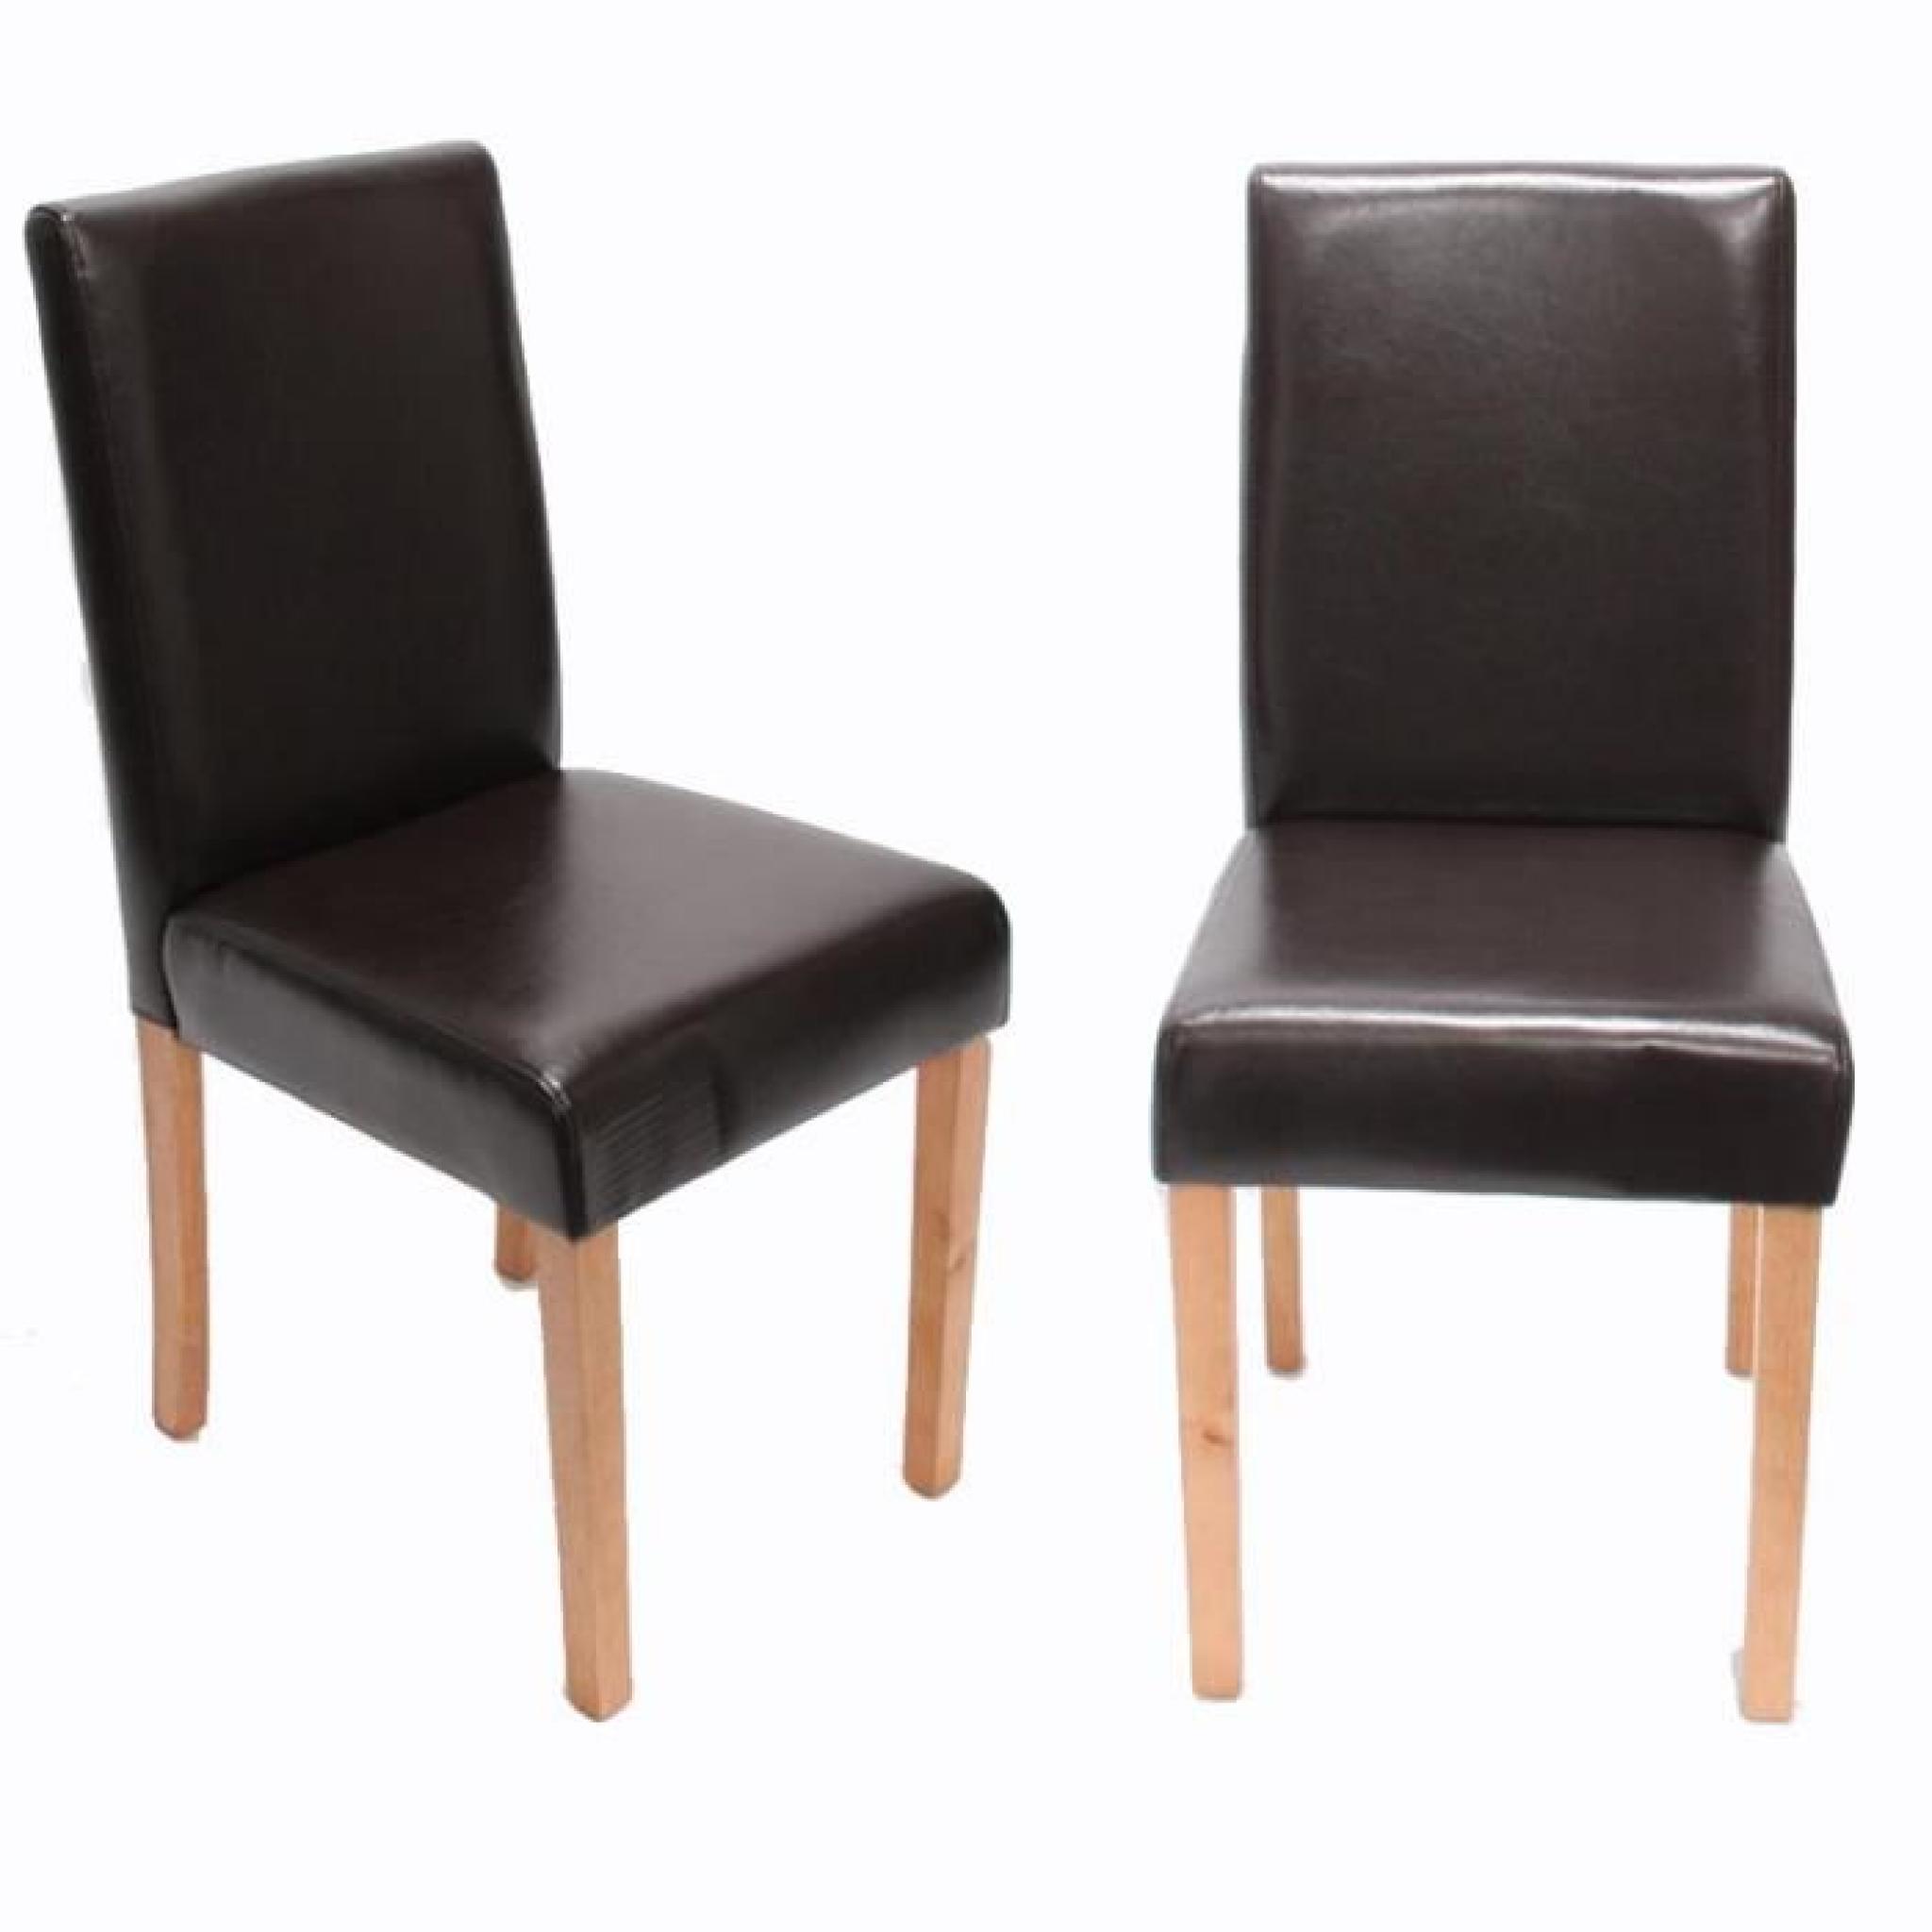  4 chaises Design moderne ; Similicuir Brun pas cher